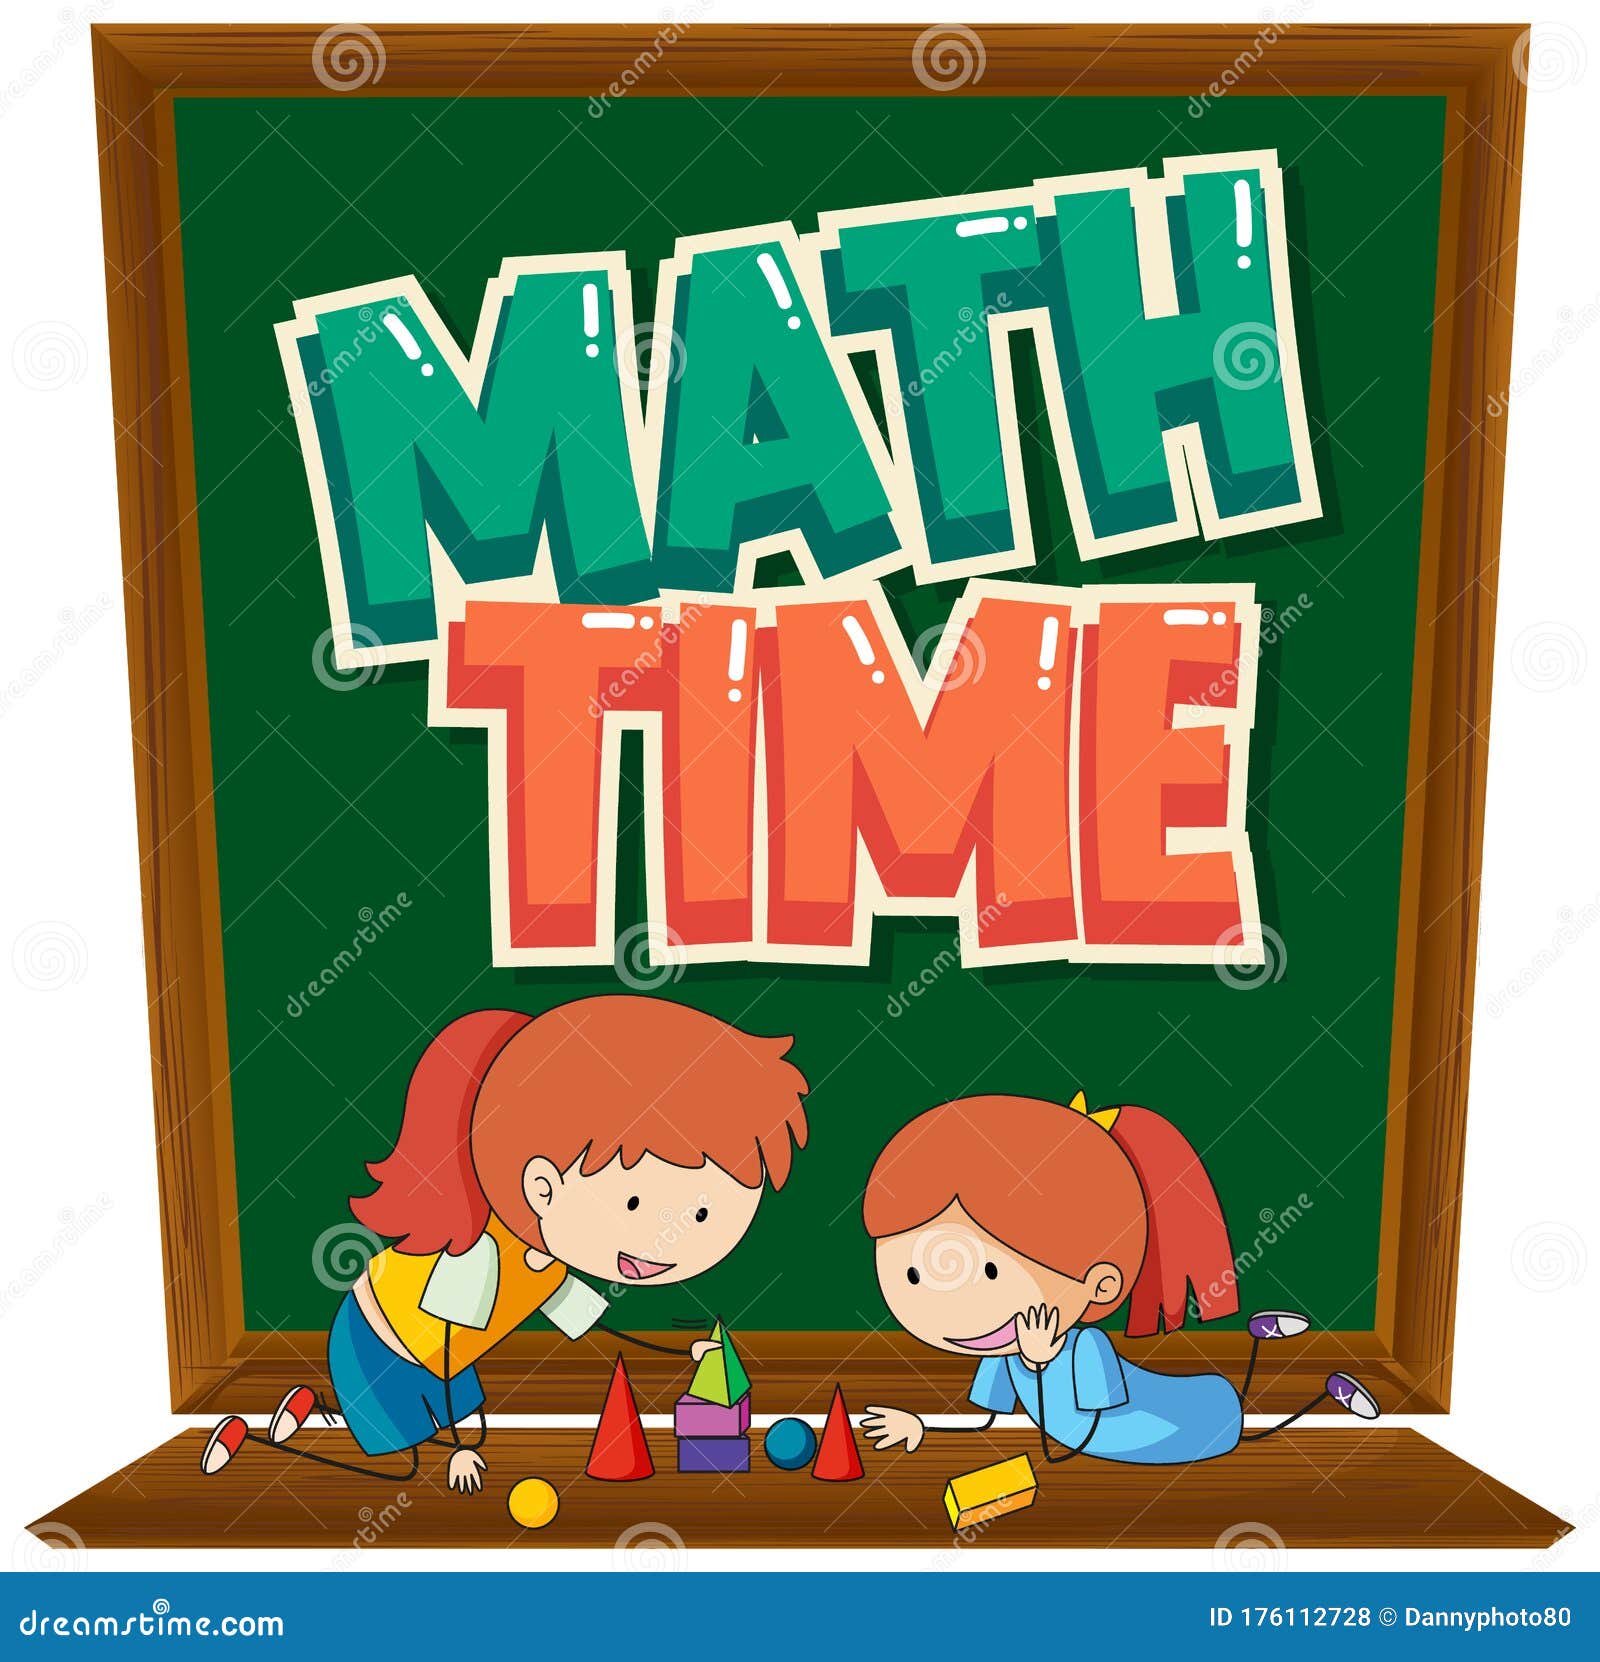 Trẻ em học toán - Giải trí không chỉ là những trò chơi. Hãy cùng nhau khám phá thế giới toán học thú vị với các bài học dạy toán đầy màu sắc và hấp dẫn cho trẻ em.